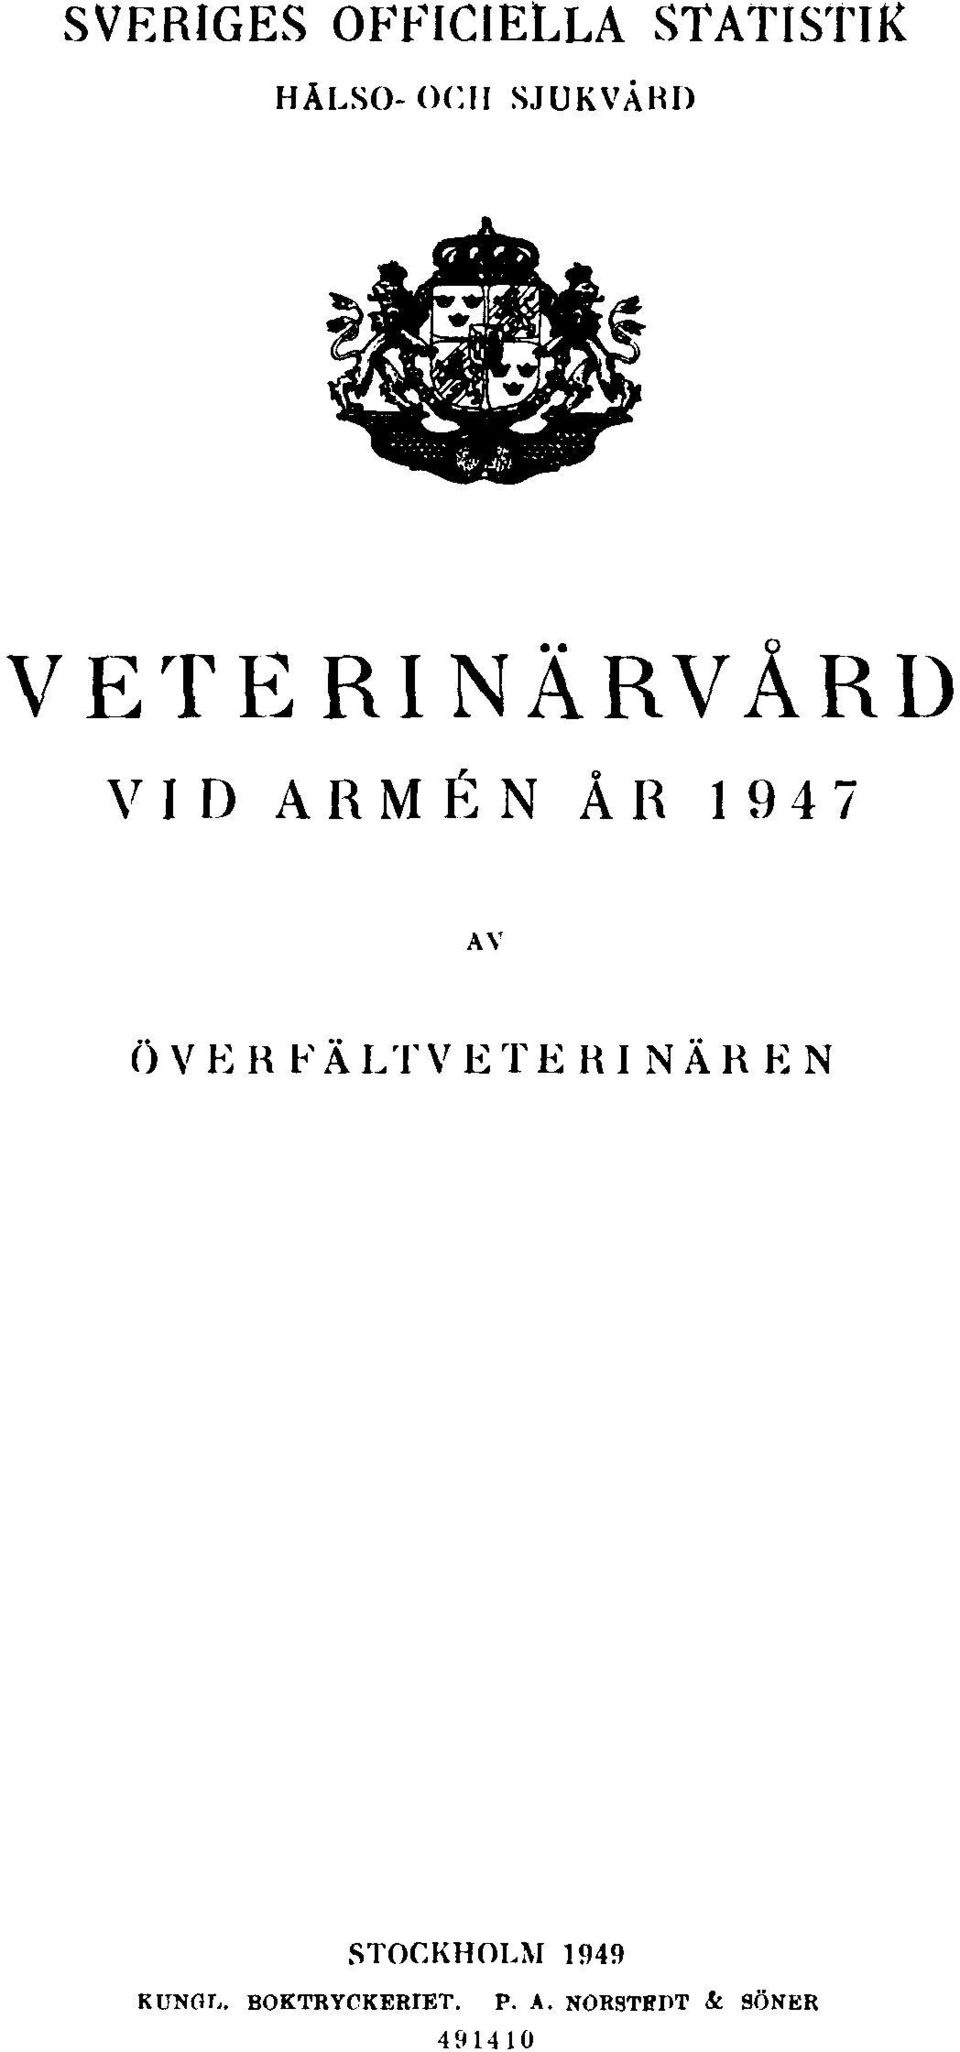 AV ÖVERFÄLTVETERINÄREN STOCKHOLM 1949